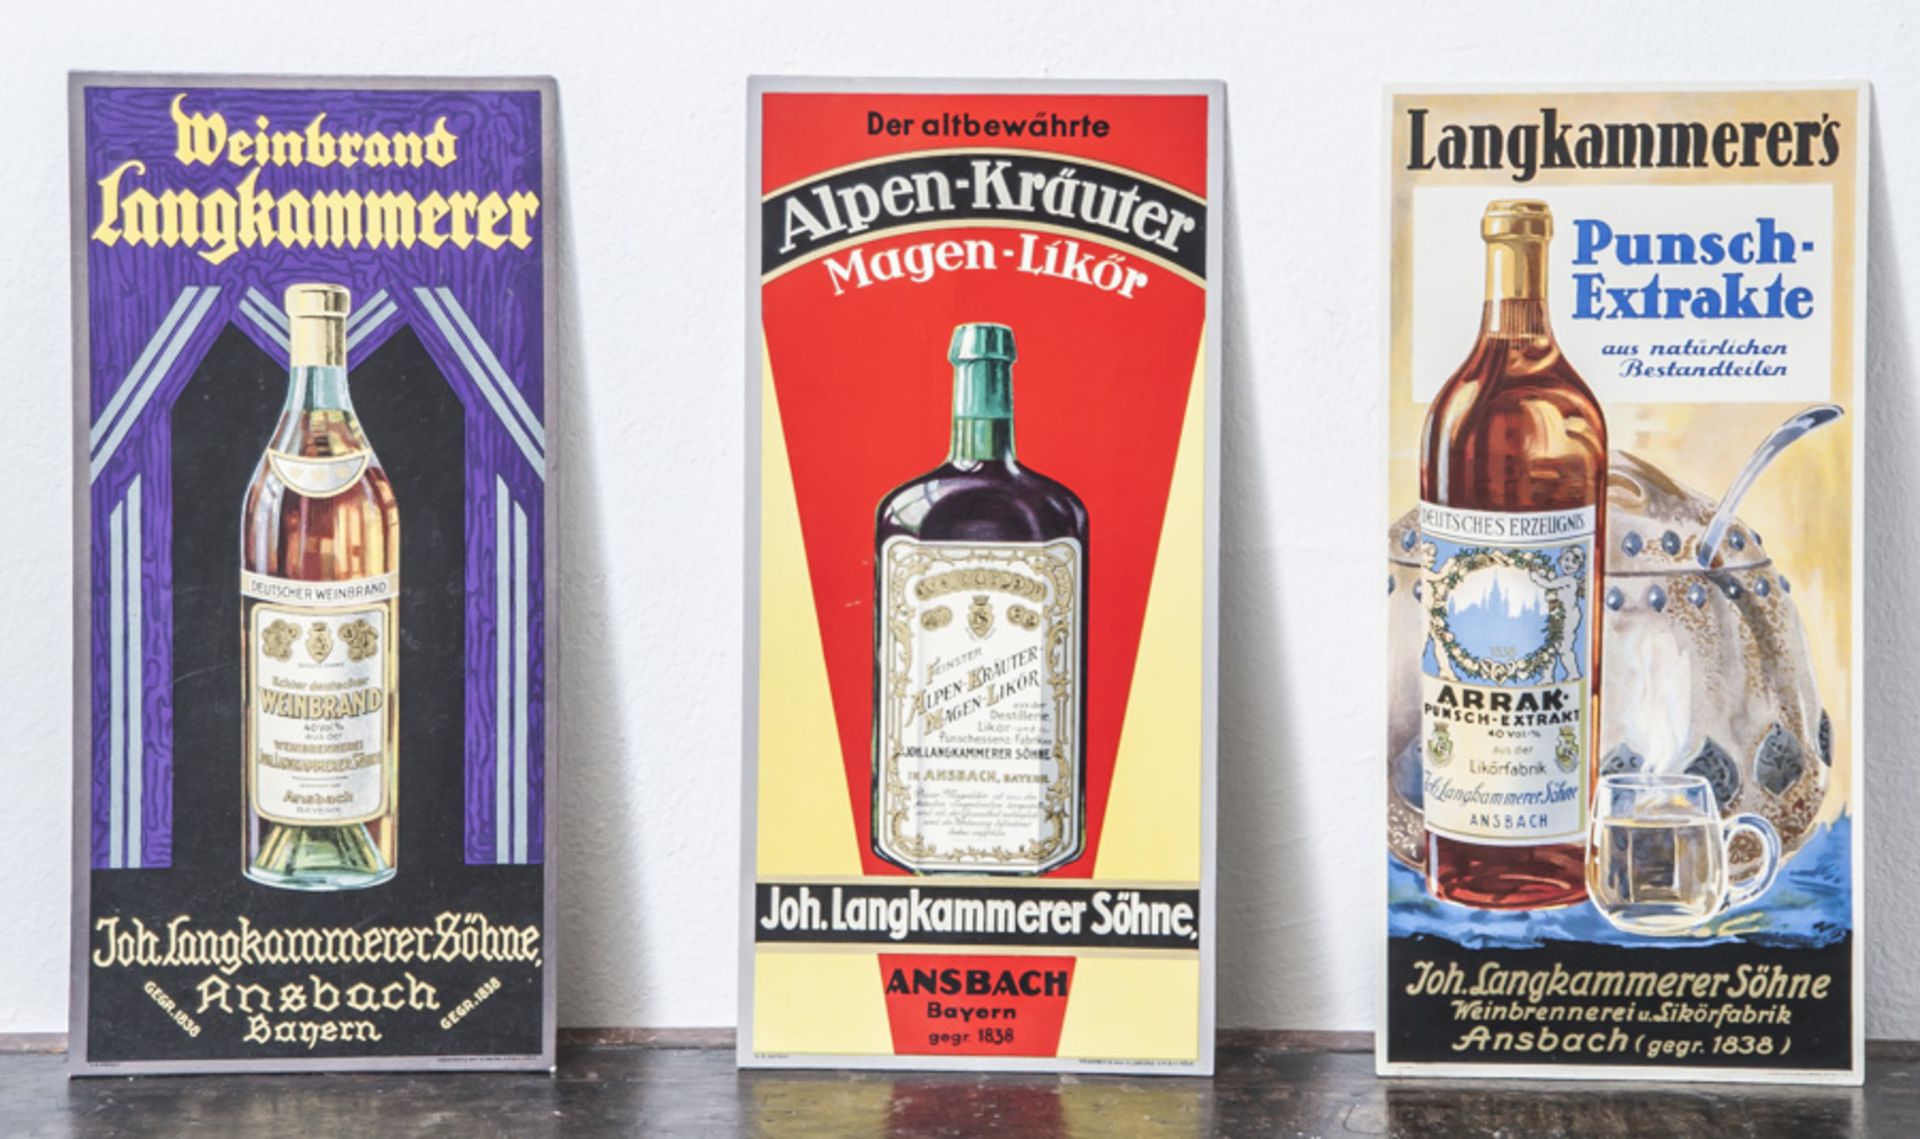 3 Werbeschilder, "Langkammerer's Punsch-Extrakte, Weinbrand Langkammerer" u. "Deraltbewährte Alpen-